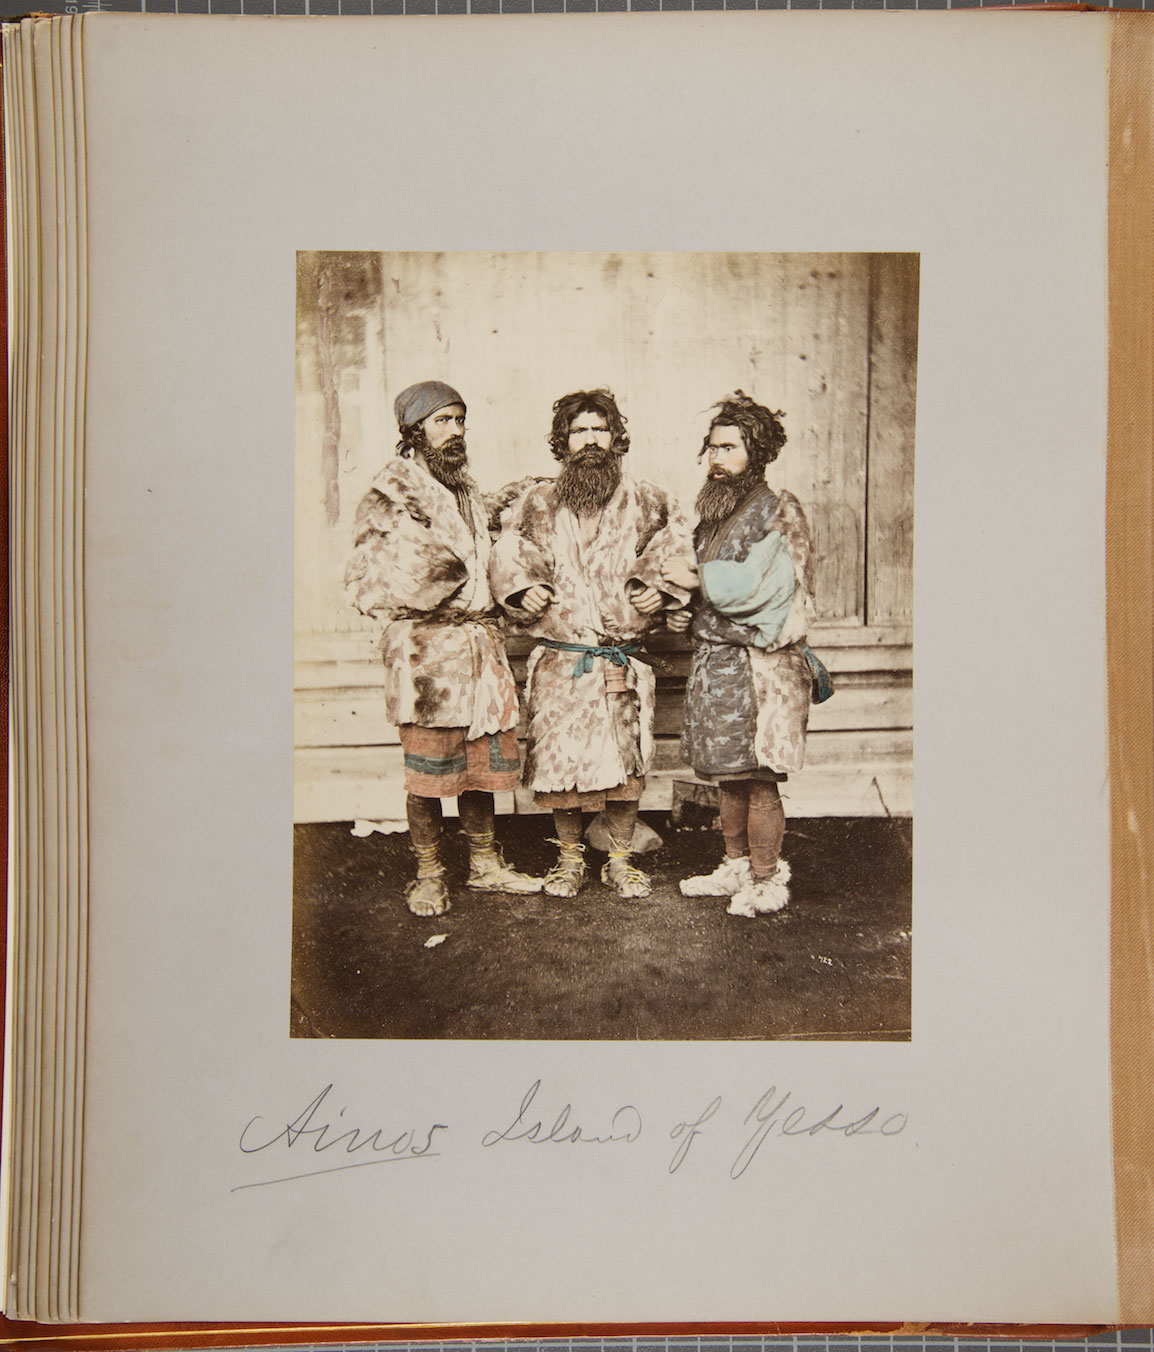 Baron Raimund von Stillfried. [Ainus - Group of Three Men], 1872. Courtesy of the Andrew Carnegie Birthplace Museum.